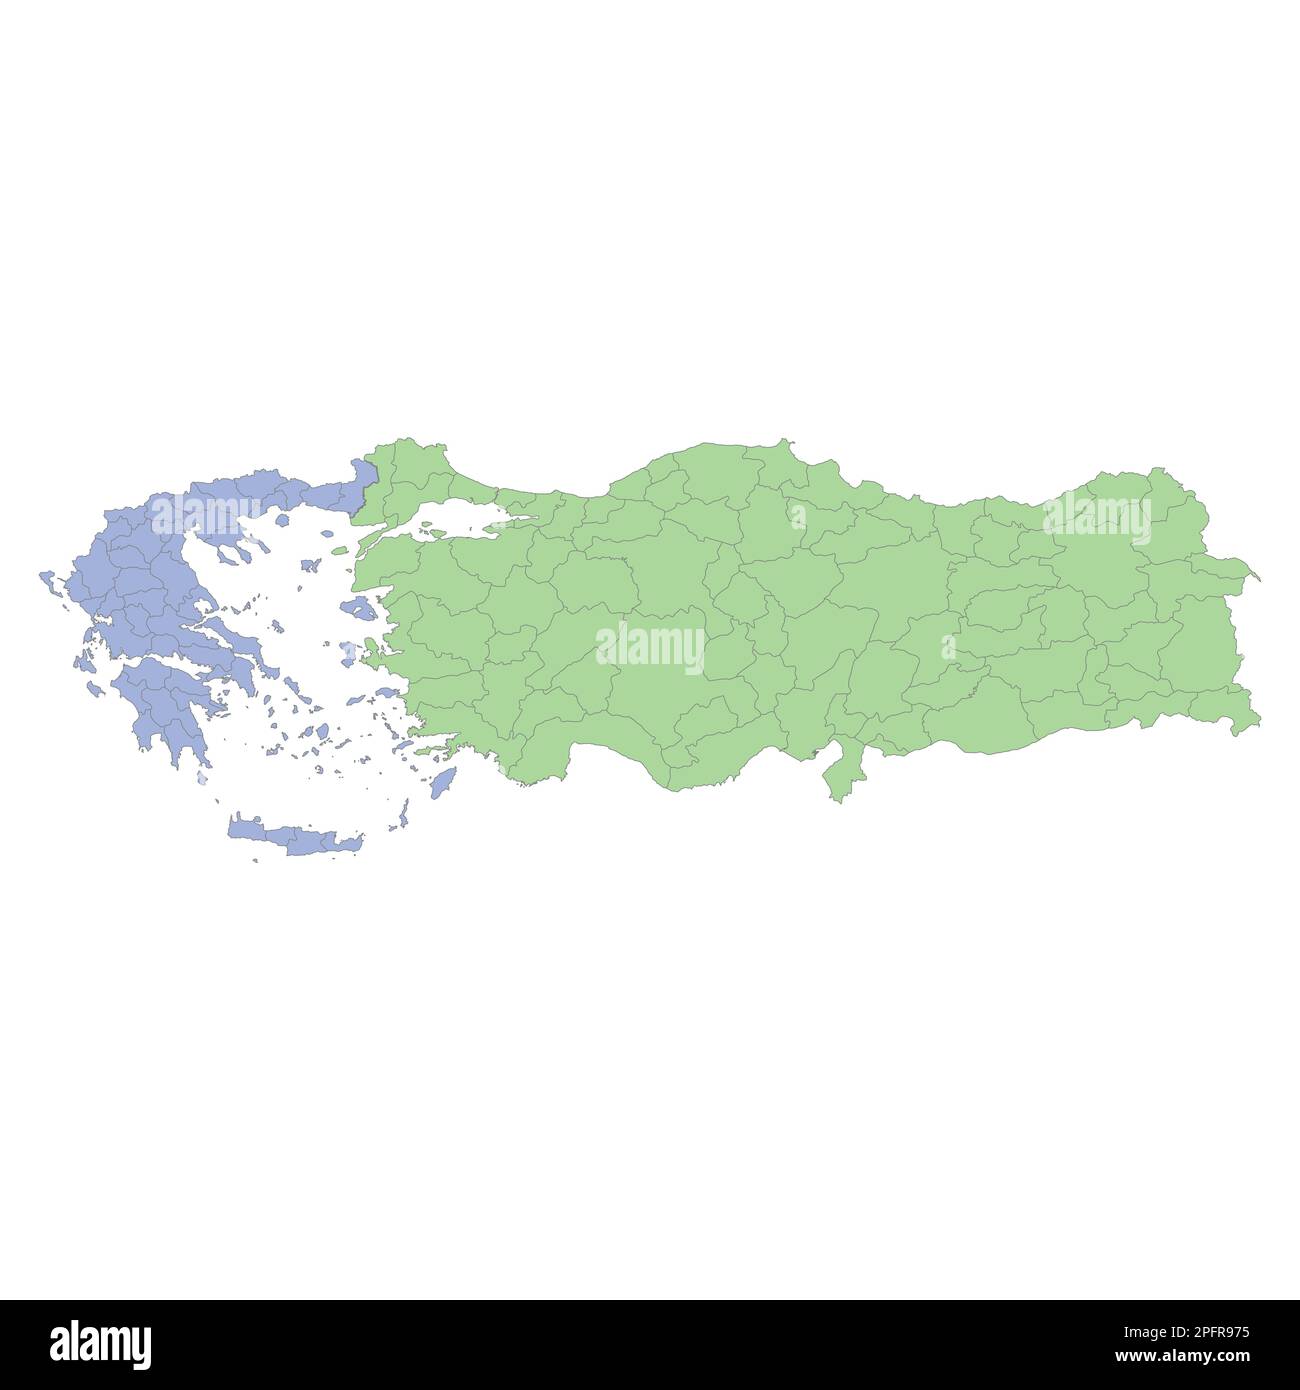 Mappa politica di alta qualità della Grecia e della Turchia con i confini delle regioni o delle province. Illustrazione vettoriale Illustrazione Vettoriale